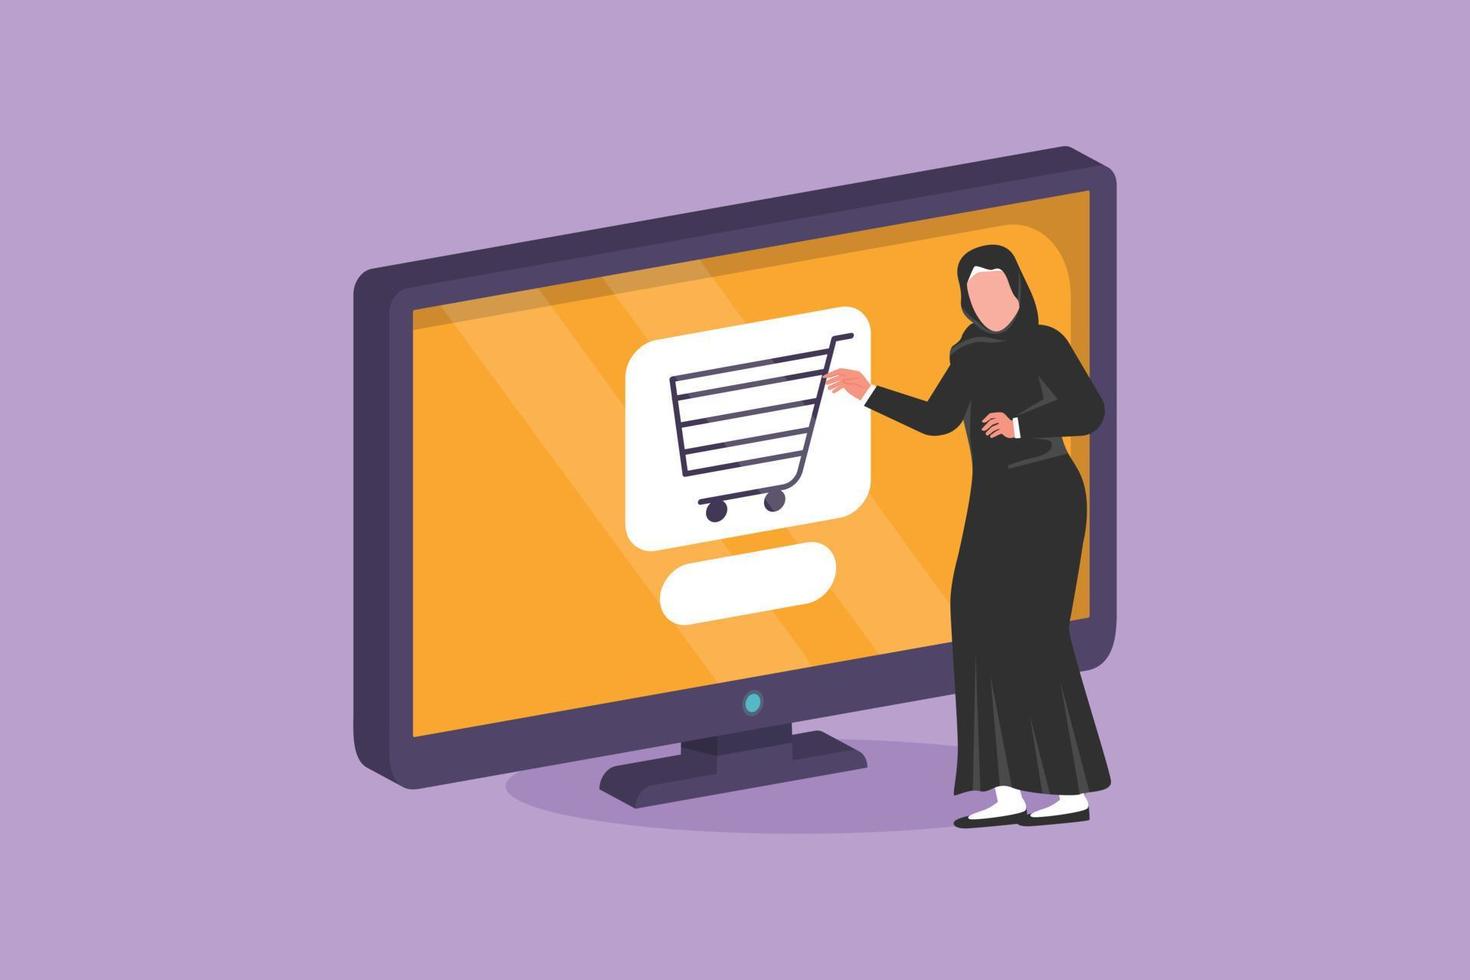 grafisches flaches design, das arabische frau steht und online über computerbildschirm mit einkaufswagen im inneren kauft. digitaler lebensstil, technologiekonsumkonzept. Cartoon-Stil-Vektor-Illustration vektor